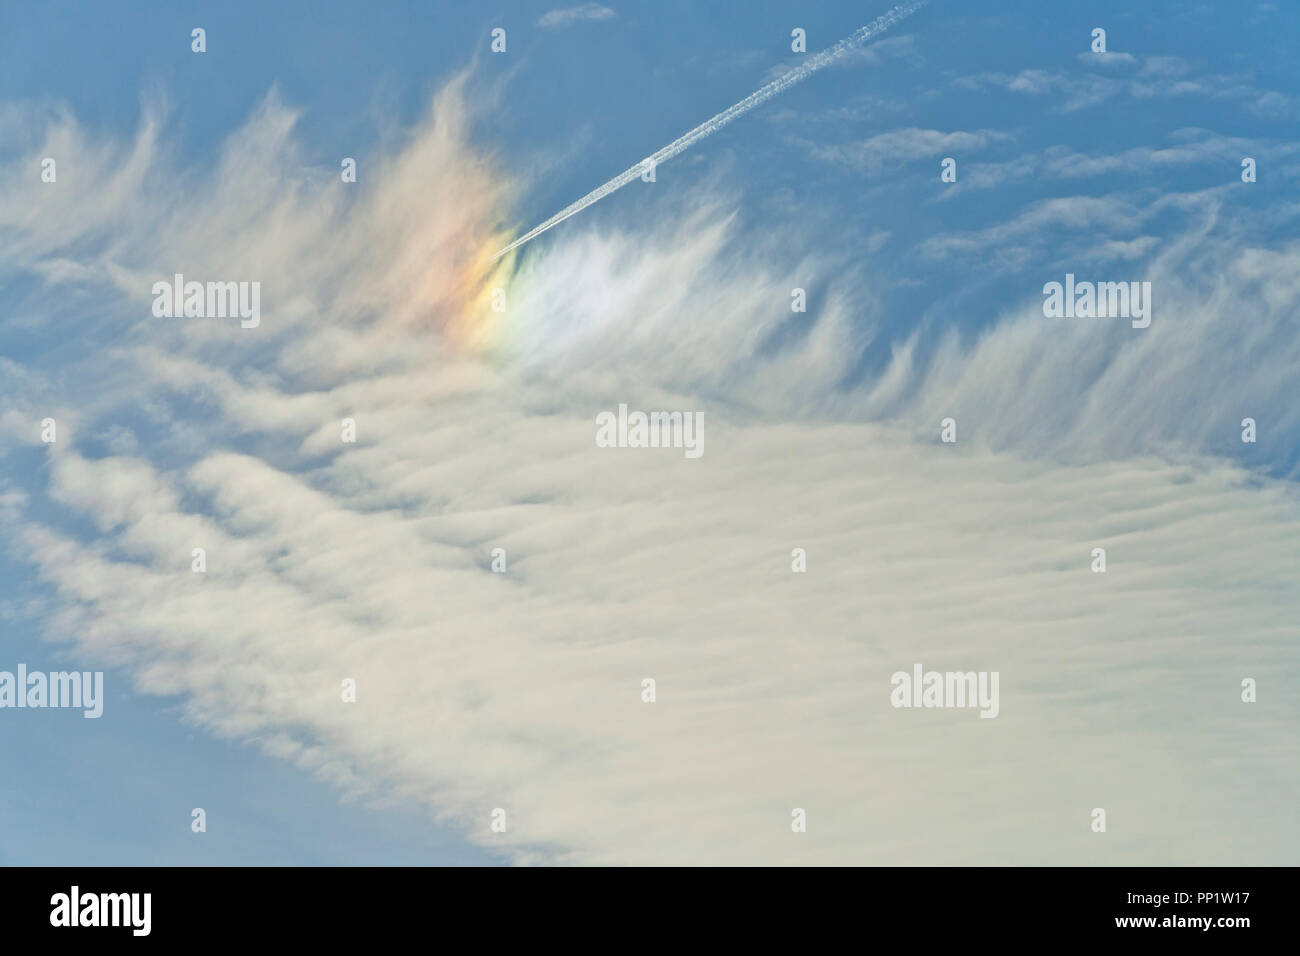 Ein Flugzeug fliegt unter Feder-wie Cirrus Wolken brechende Sonnenlicht eine nebensonne gegen ein indigo Hintergrund Ende Dezember zu erstellen. Stockfoto